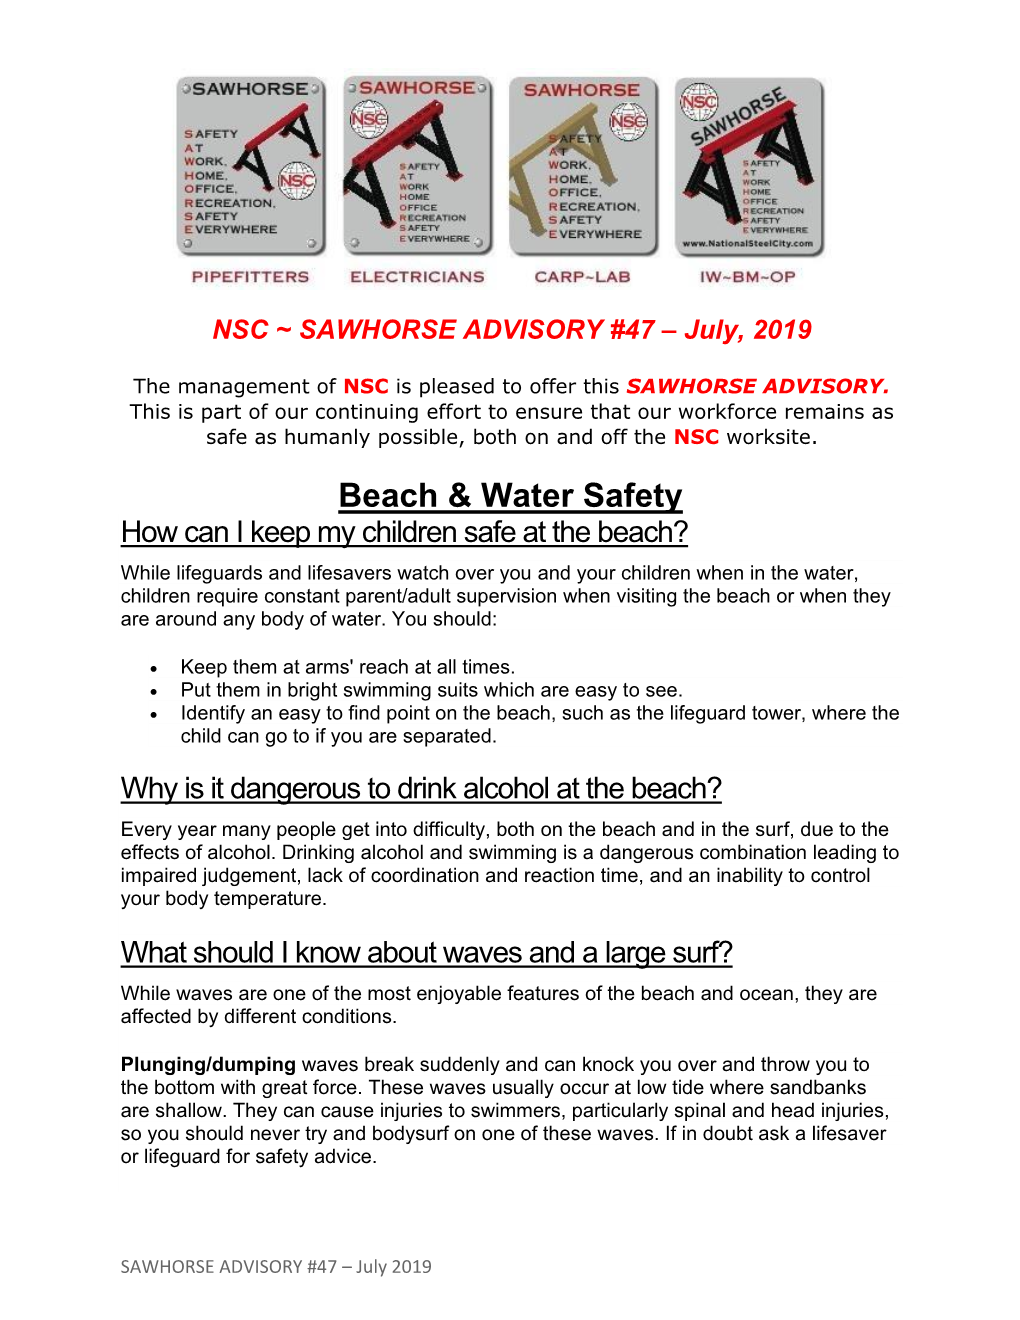 Beach & Water Safety